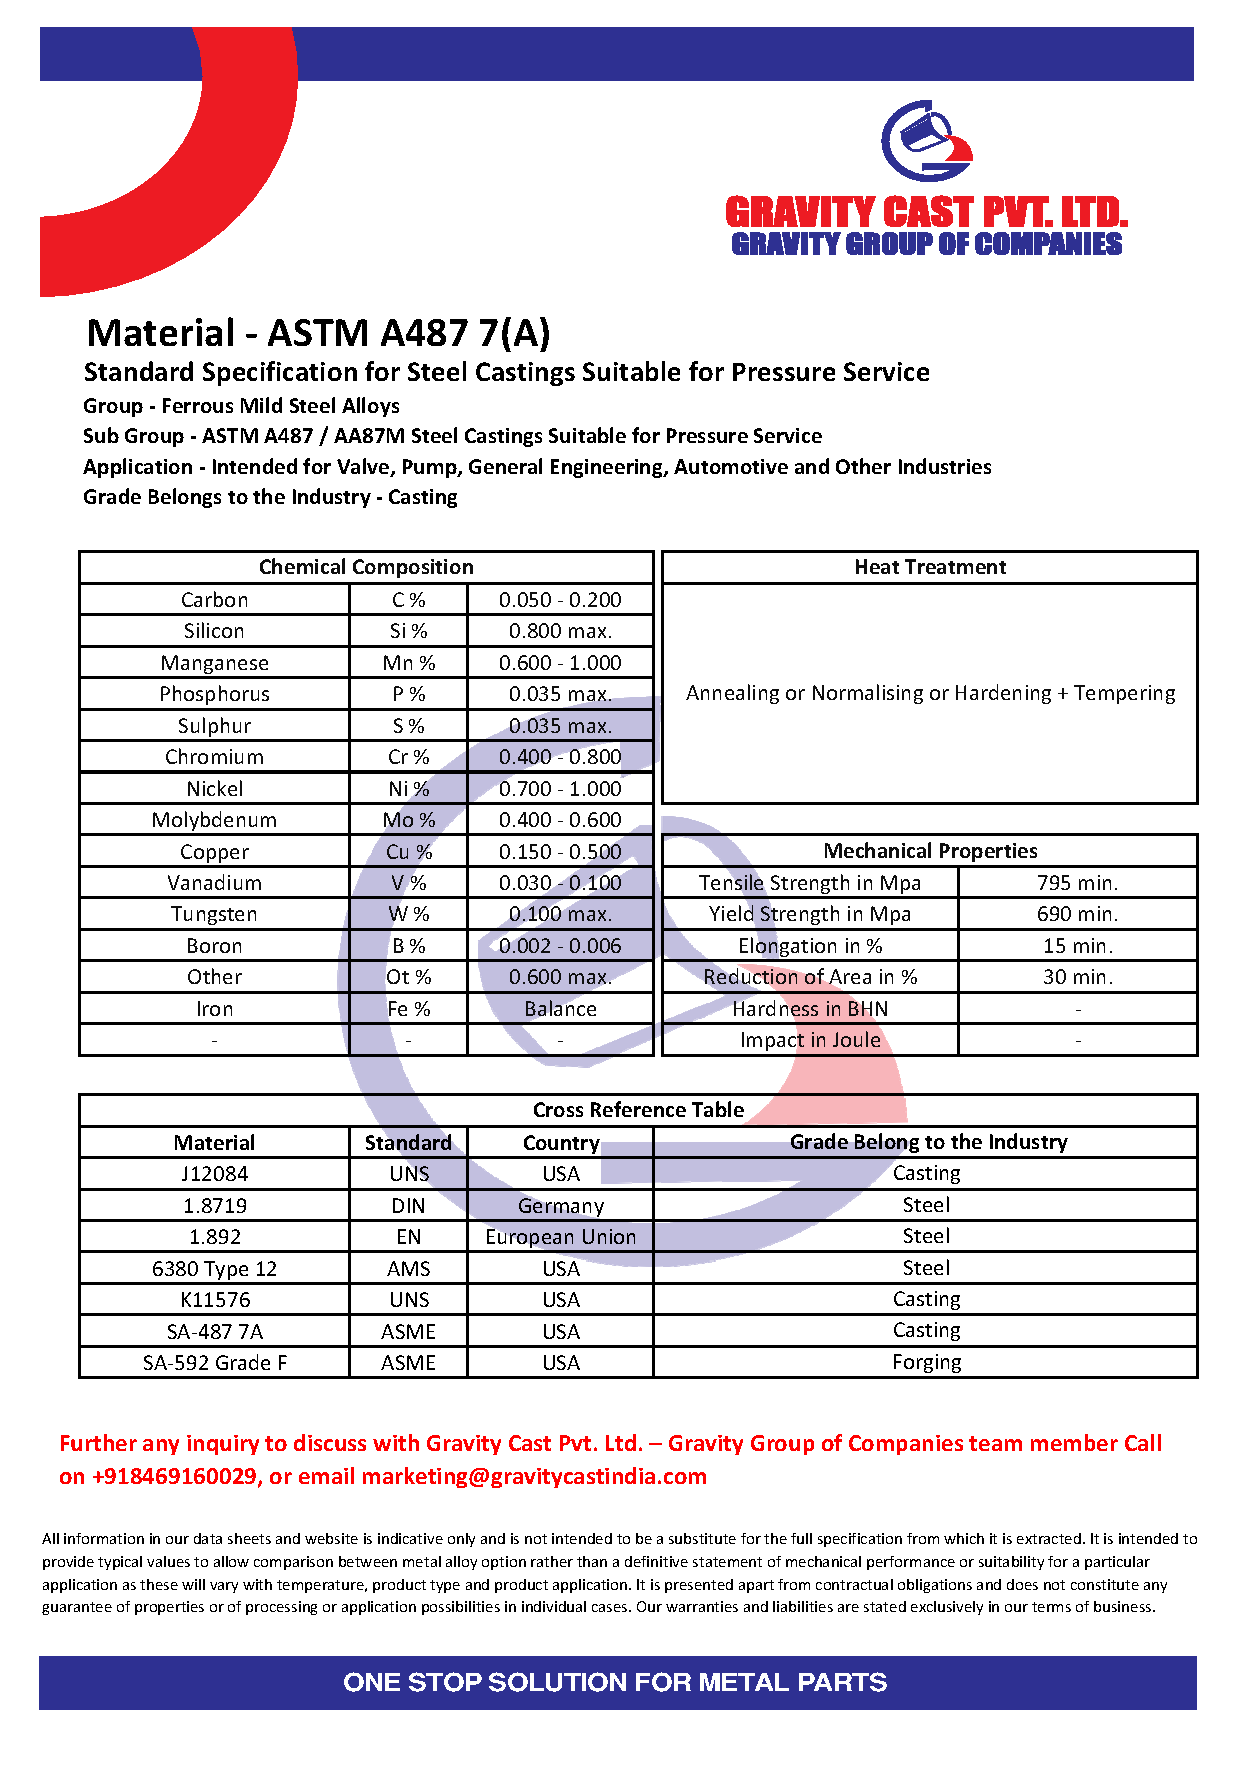 ASTM A487 7(A).pdf